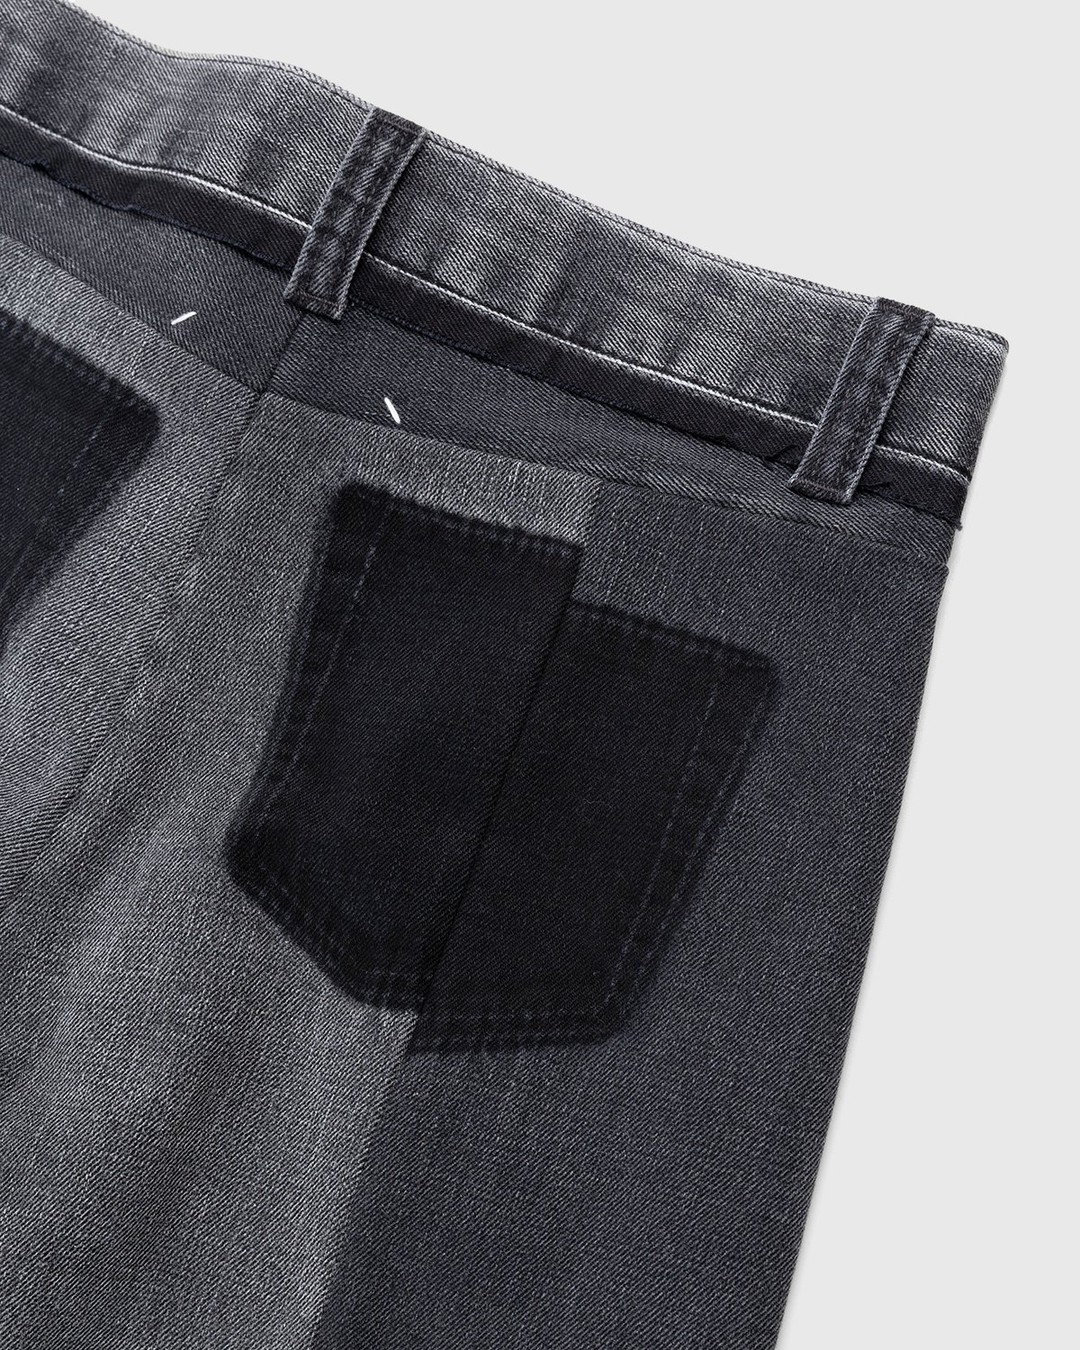 Maison Margiela – Spliced Jeans Black - Pants - Black - Image 7